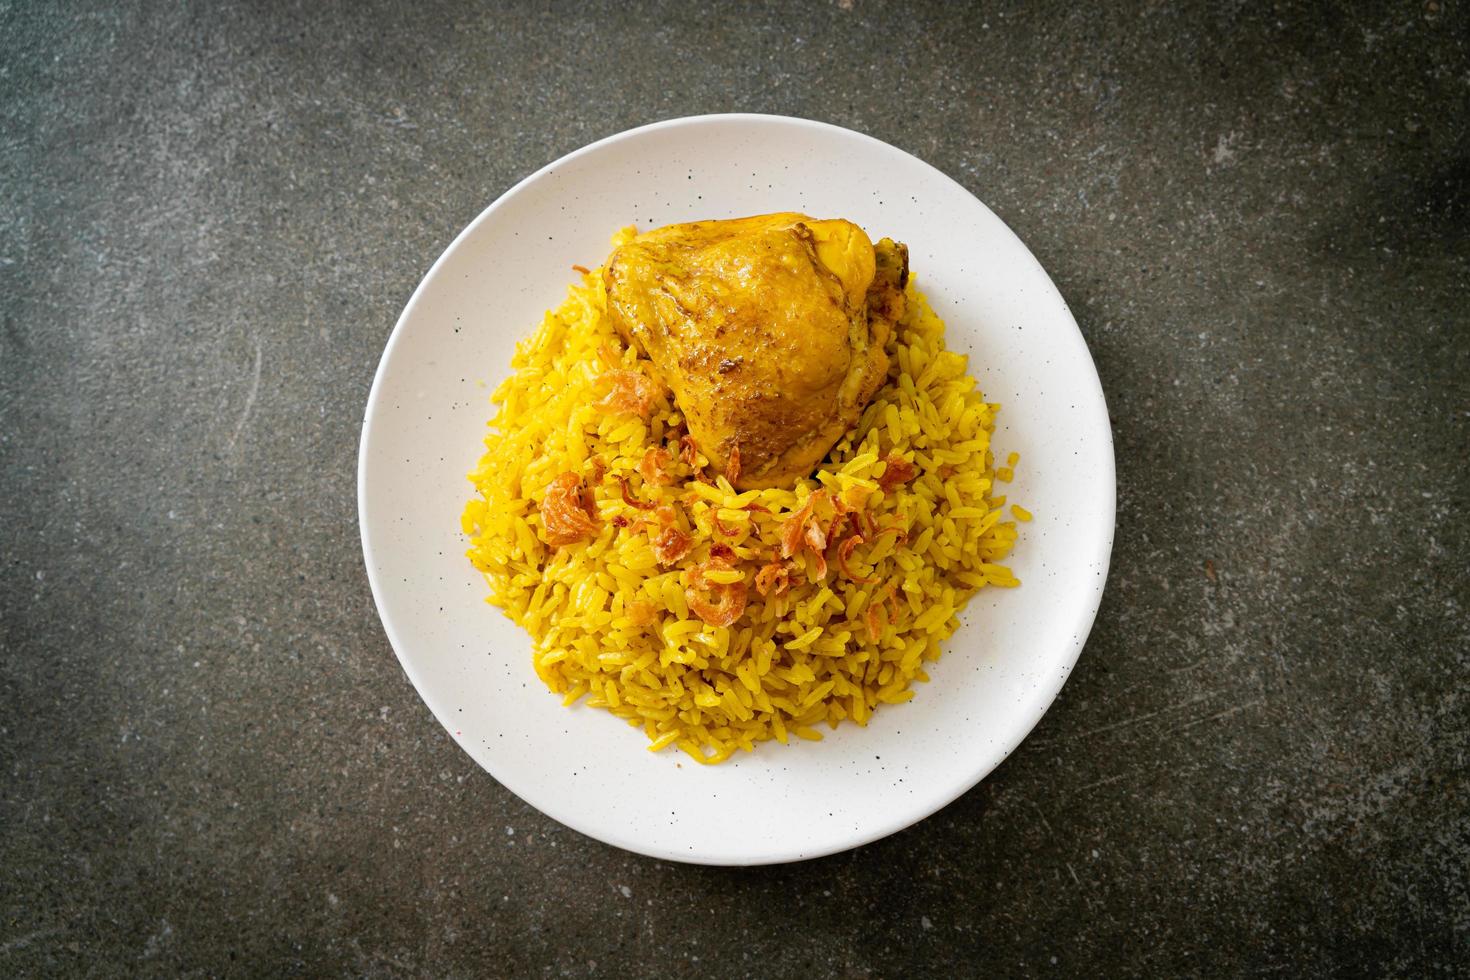 biryani di pollo o riso al curry e pollo - versione thai-musulmana del biryani indiano, con riso giallo profumato e pollo foto